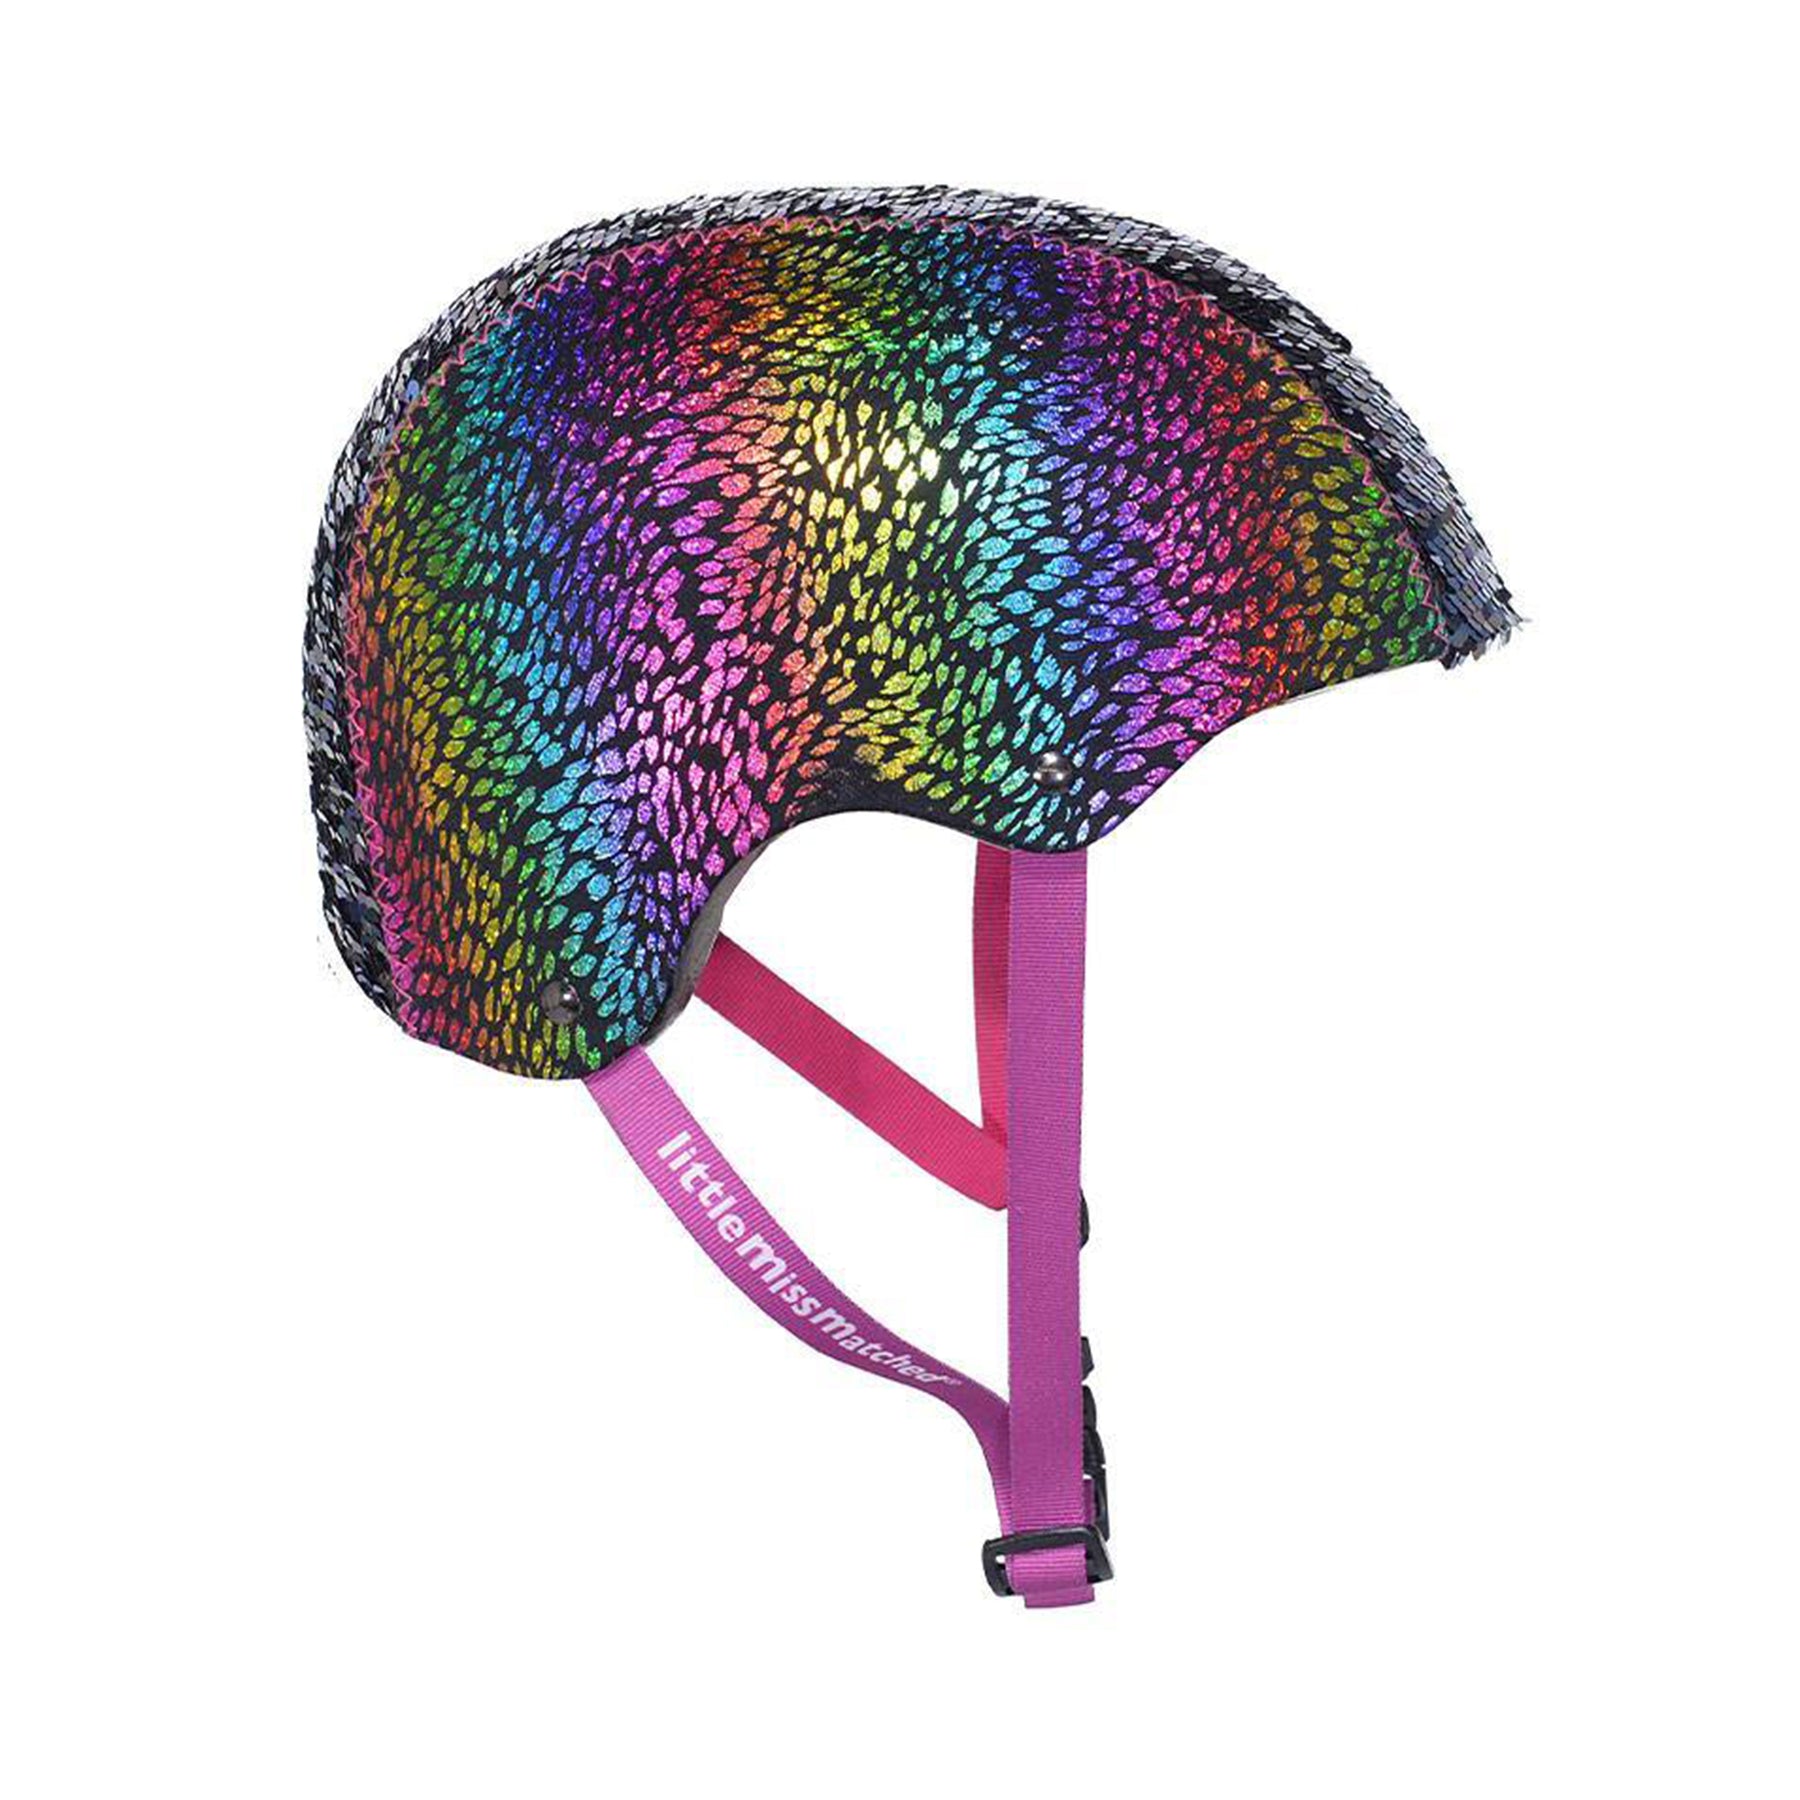 LittleMissMatched® Rainbow Dragon Youth Multi-Sport Helmet | Helmet for Kids Ages 8+